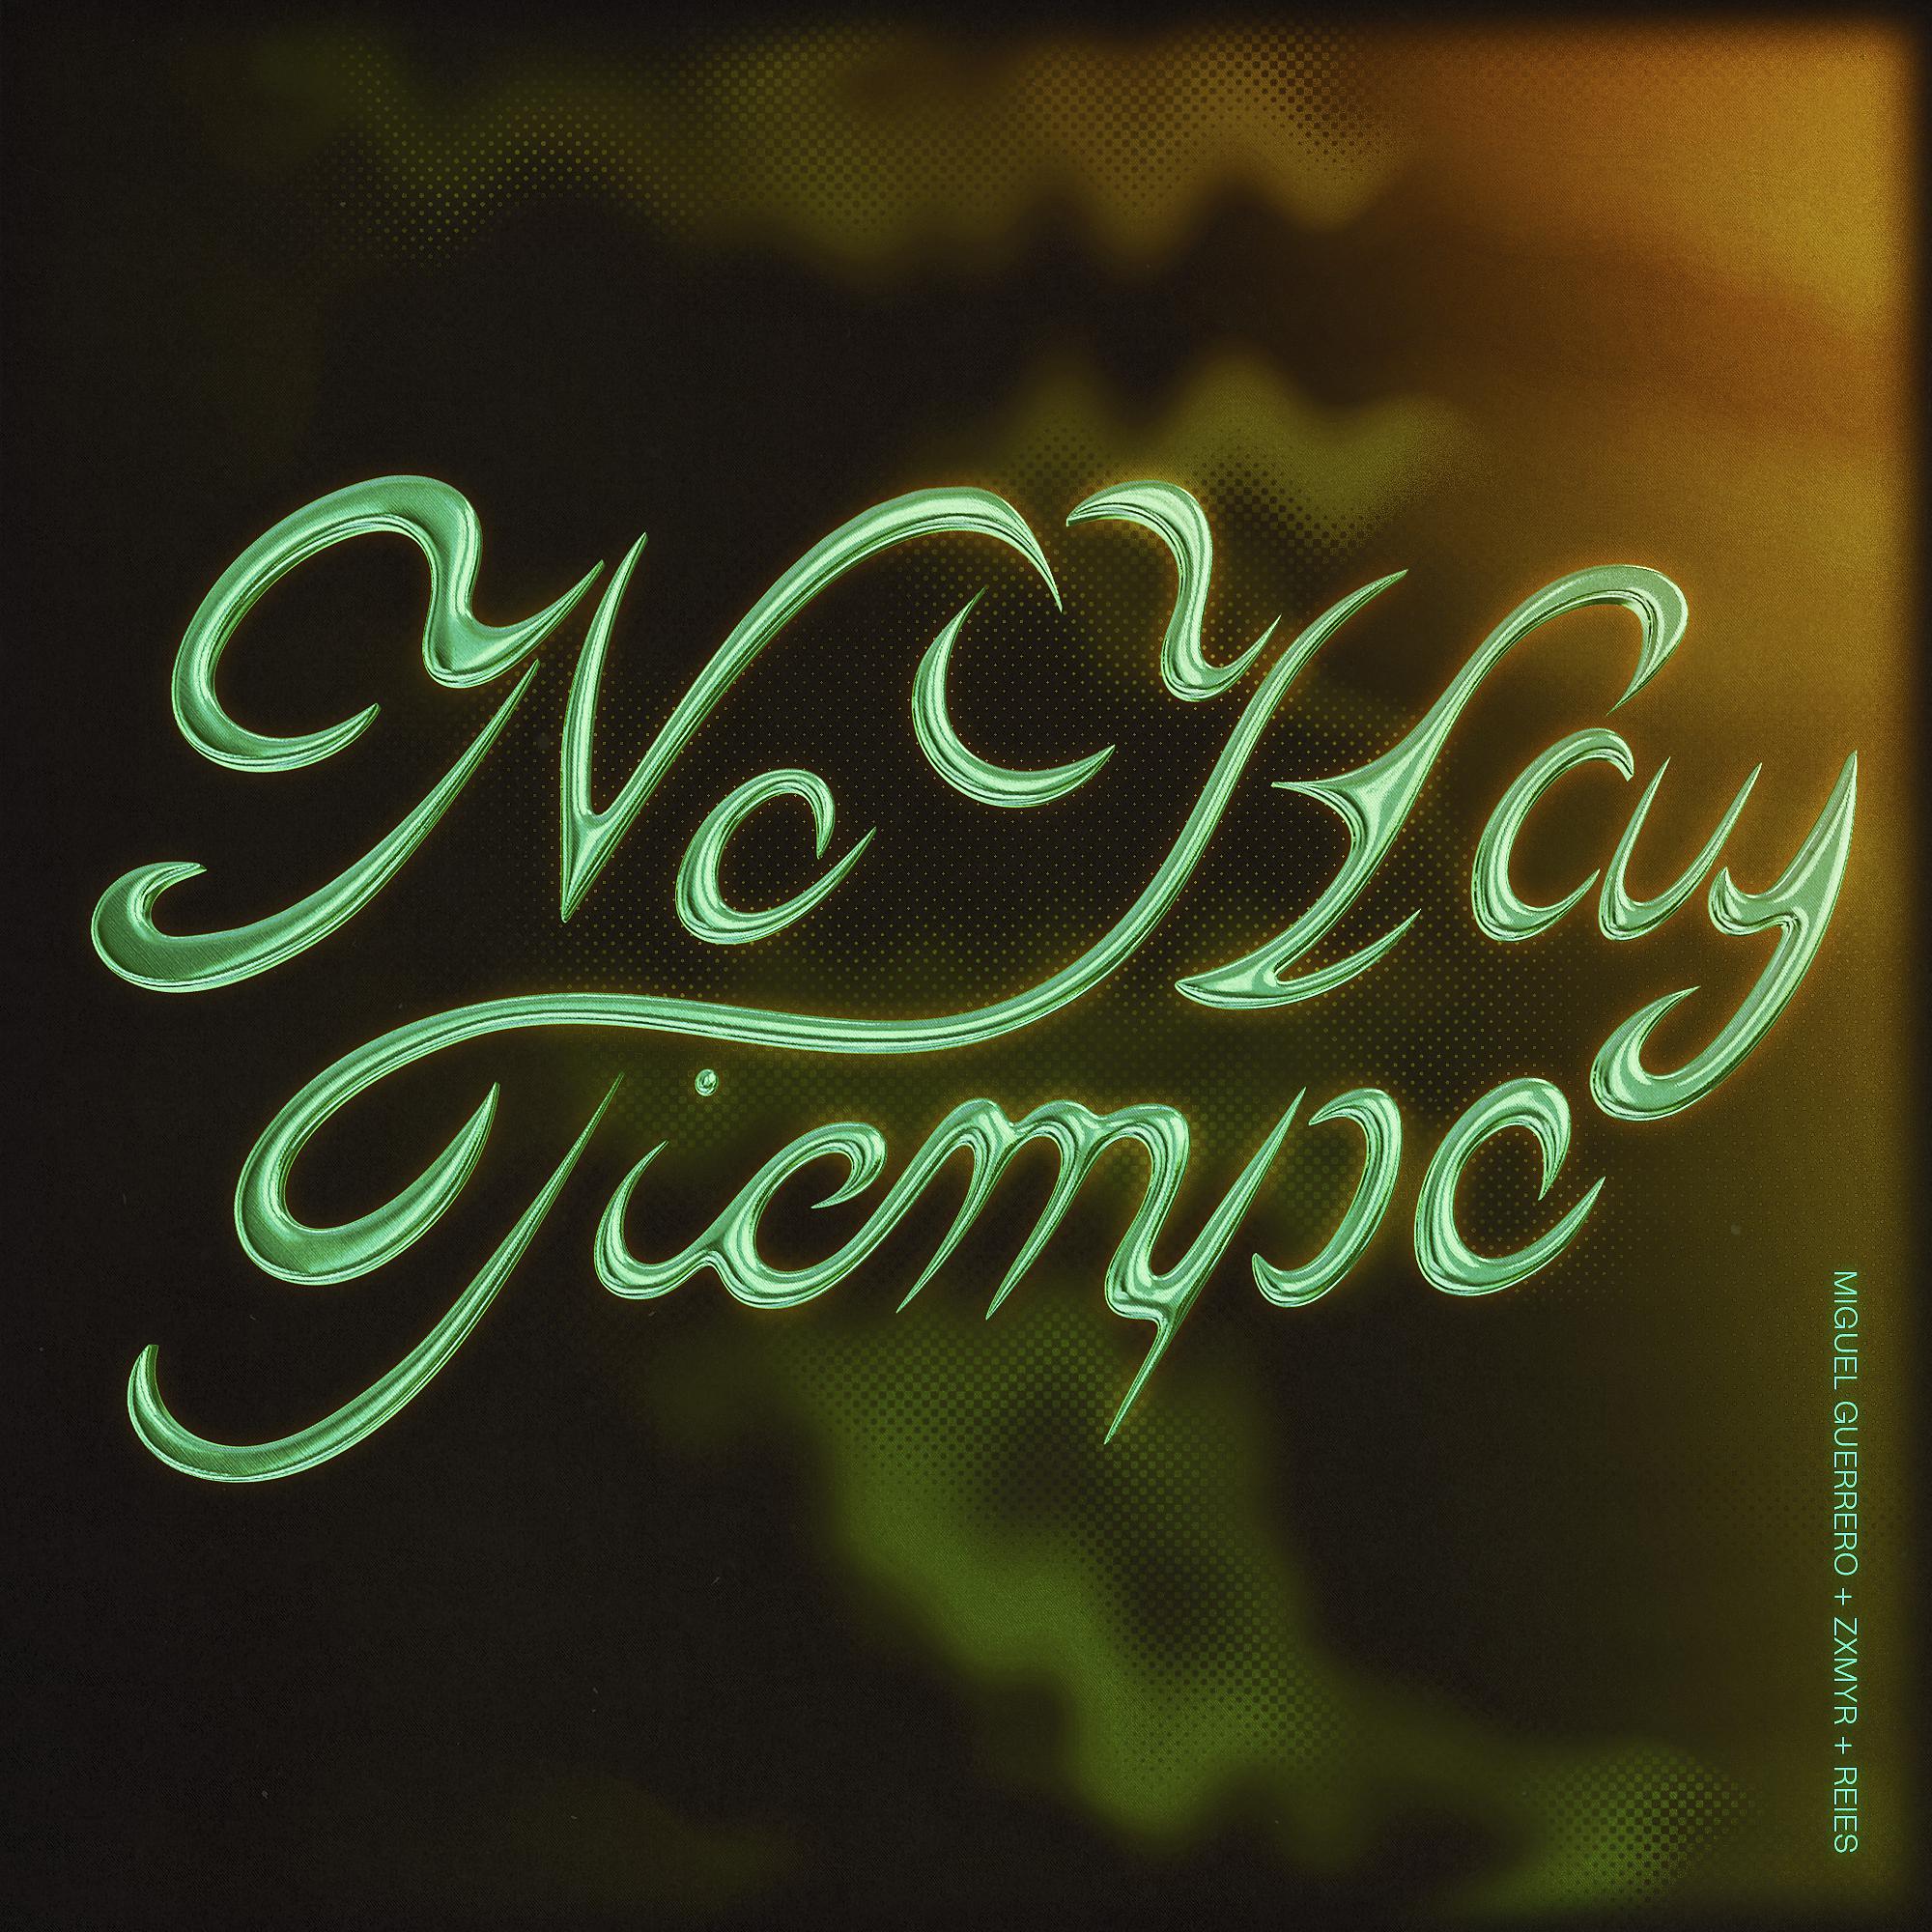 Постер альбома No Hay Tiempo